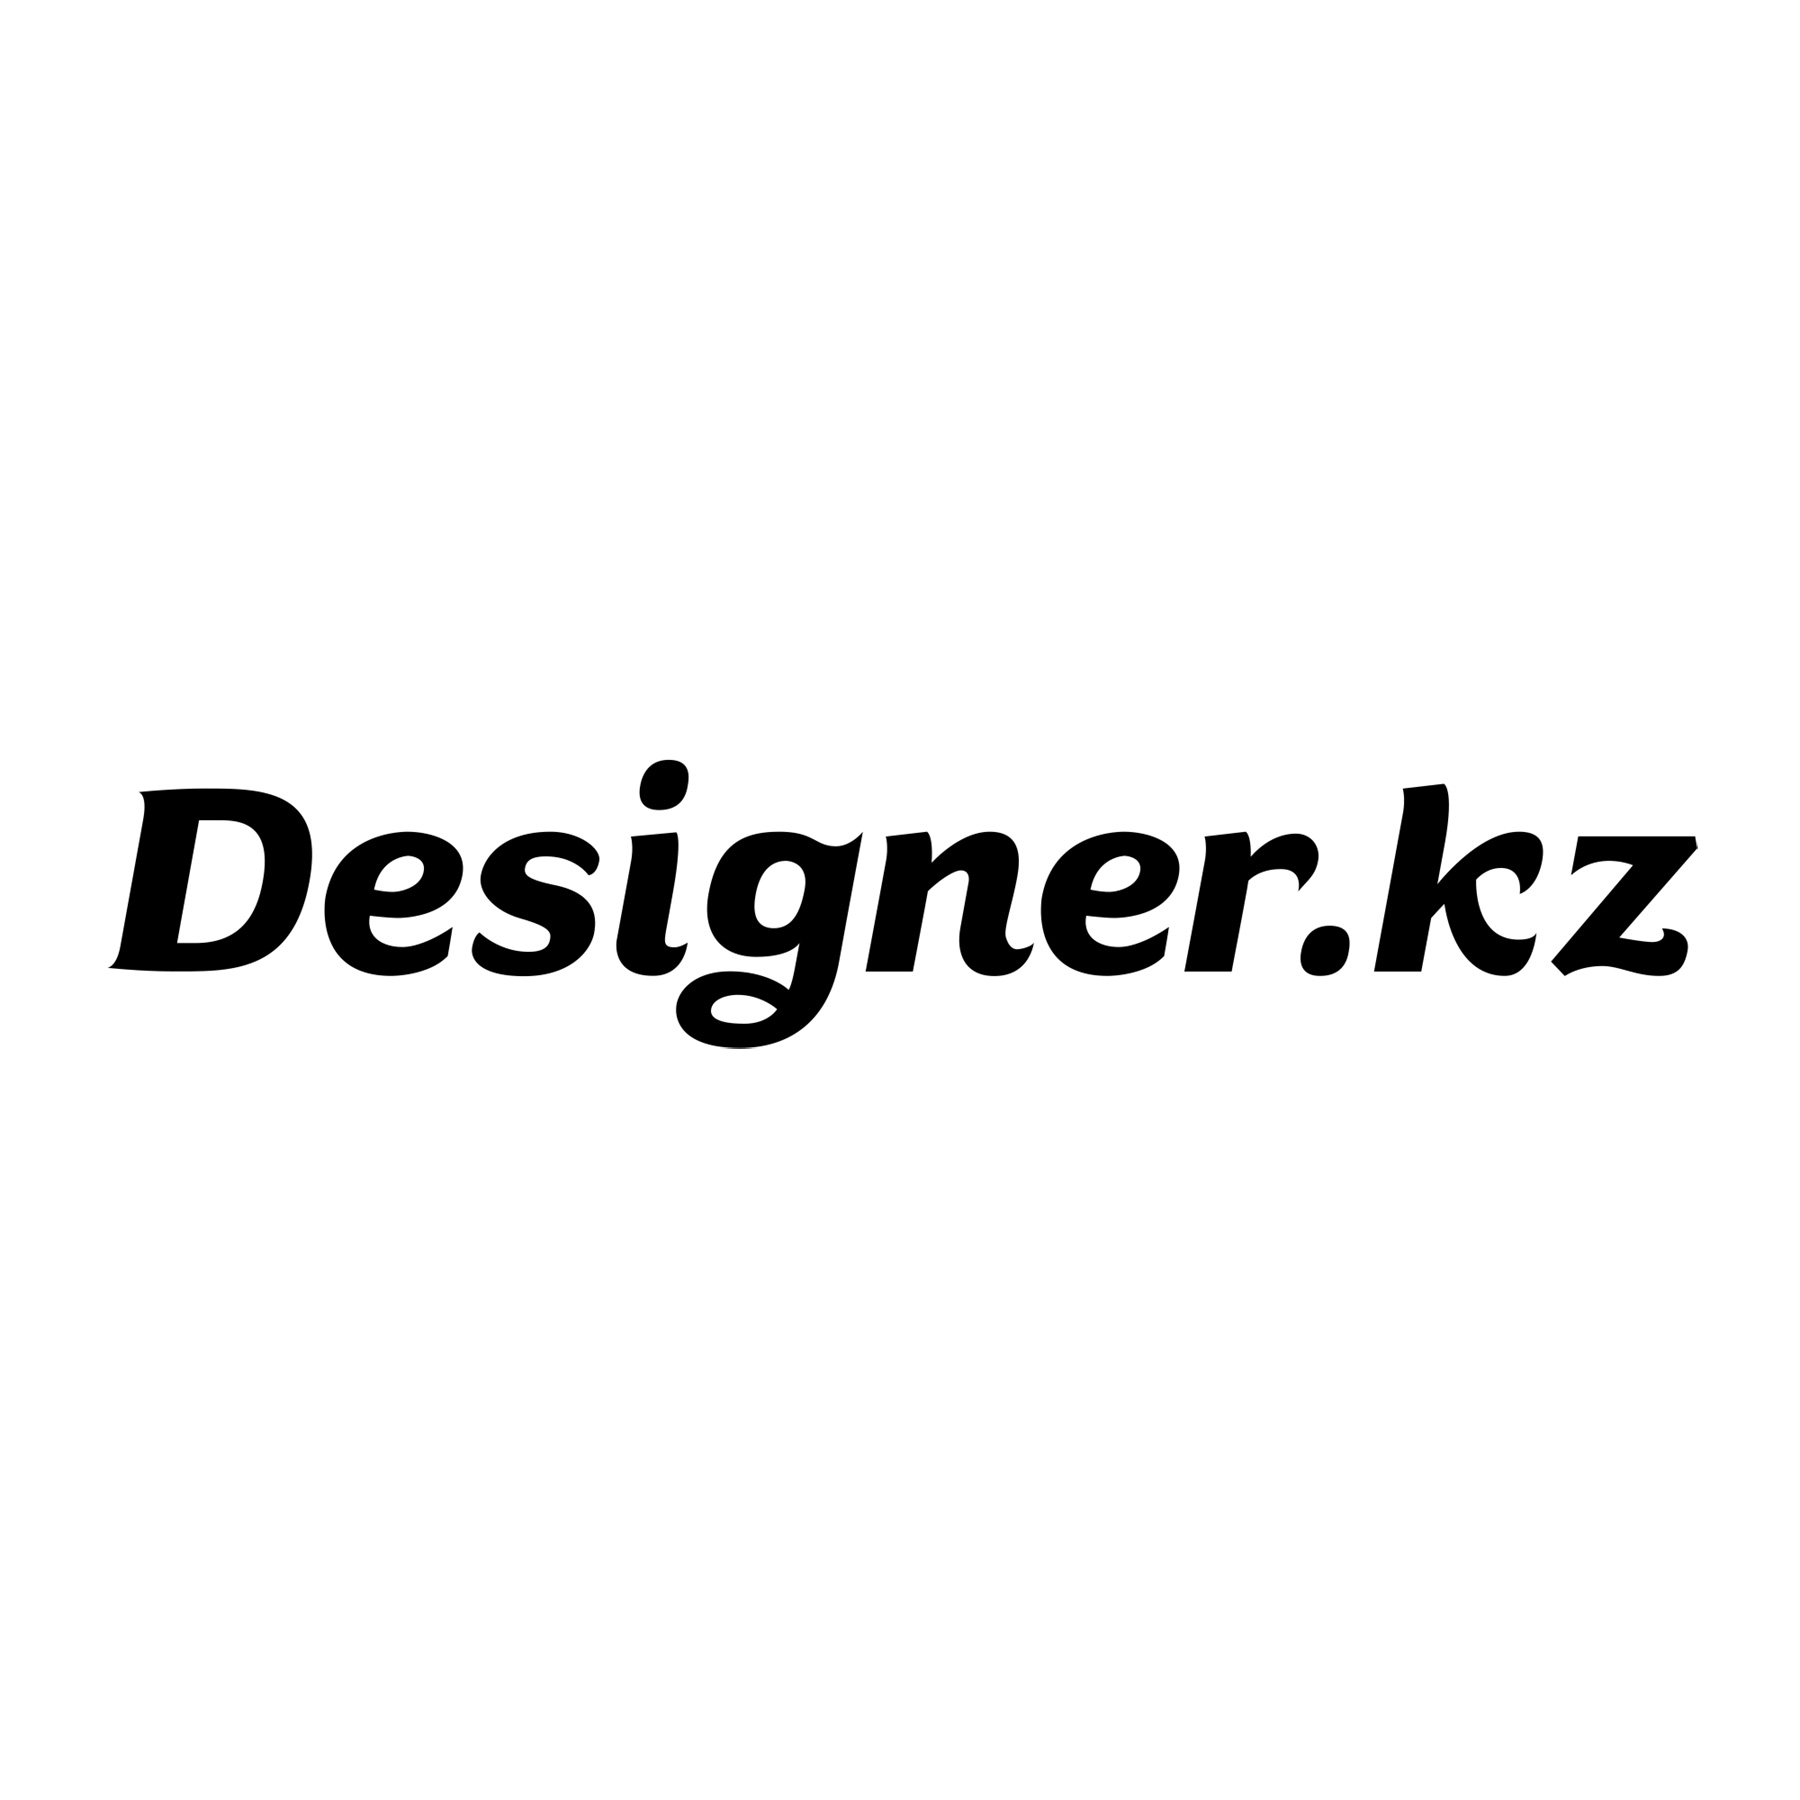 Designer.kz Logo